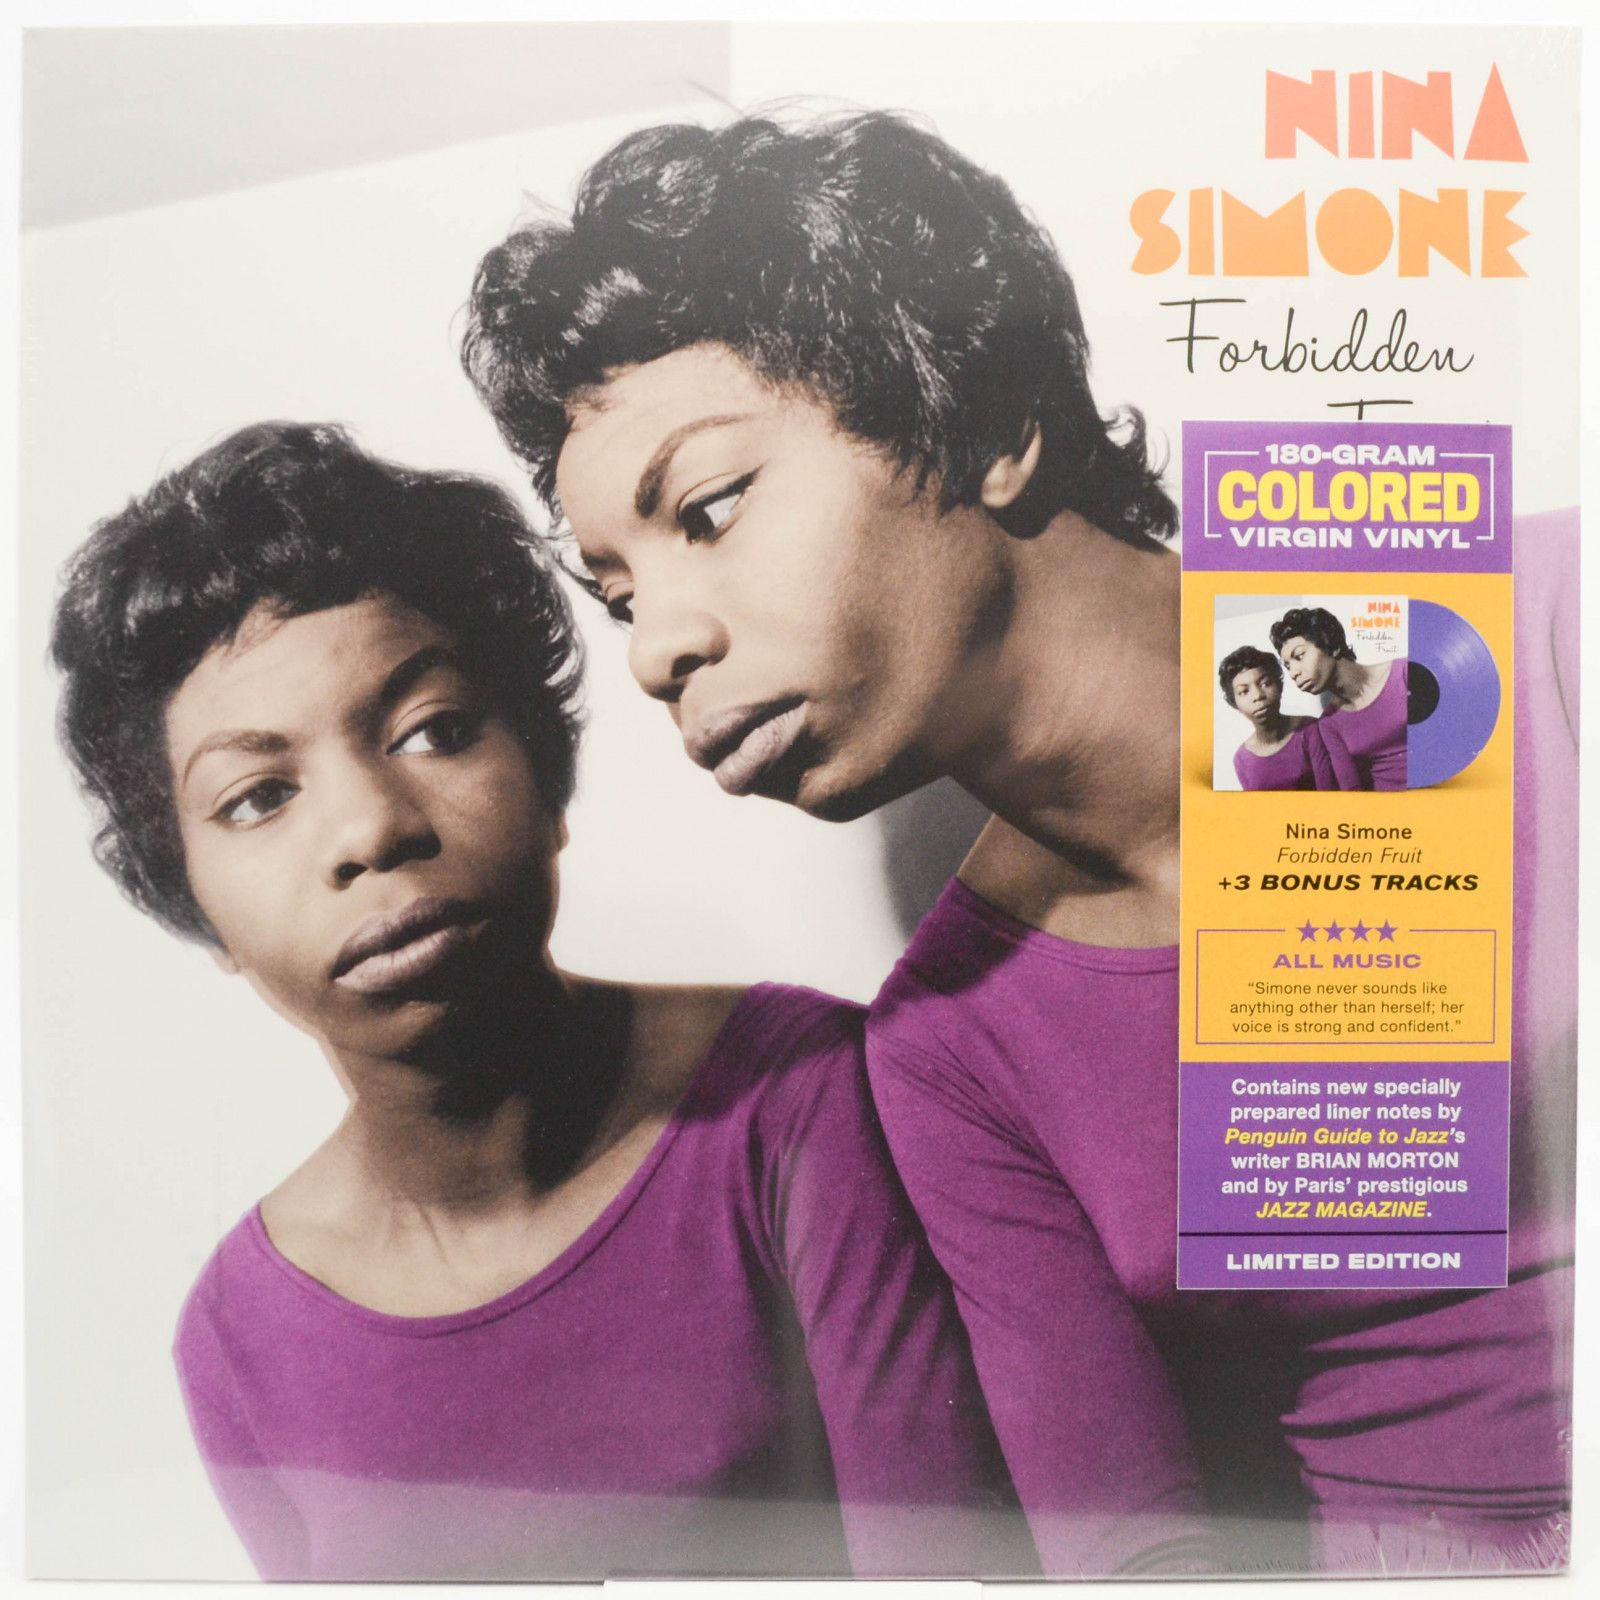 Nina Simone — Forbidden Fruit, 2020